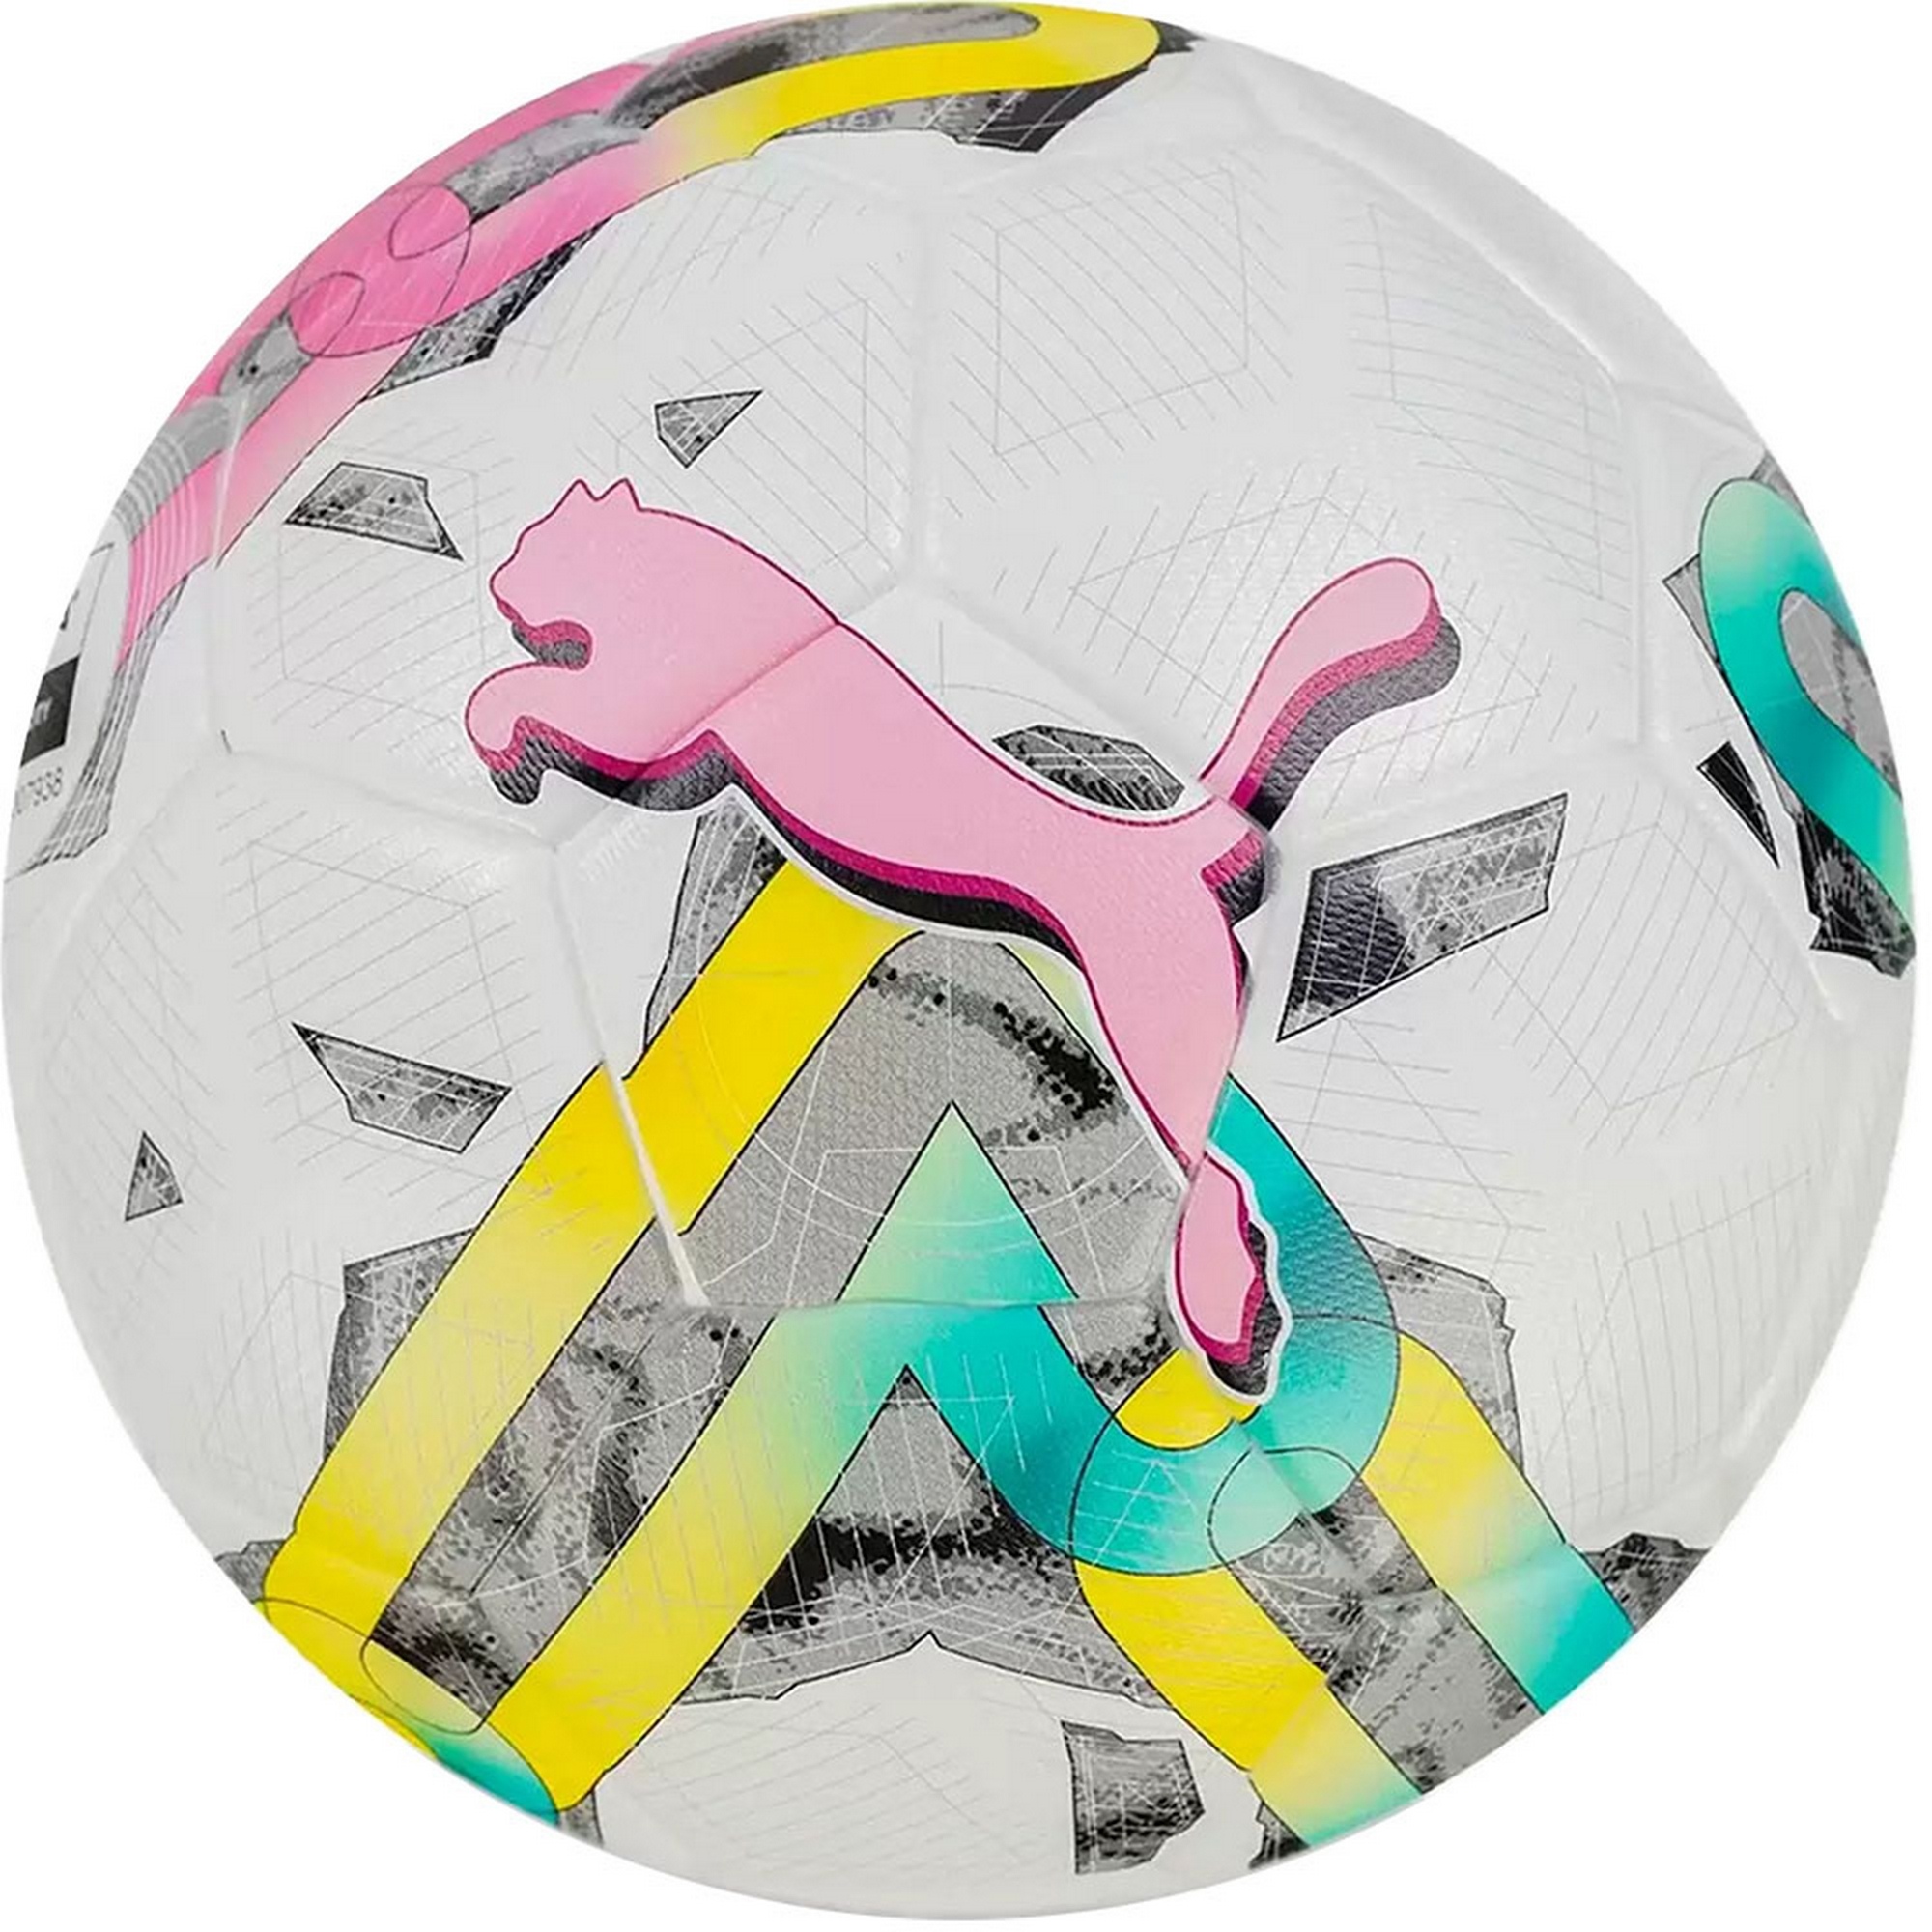 Мяч футбольный Puma Orbita 3 TB FQ, FIFA Quality 08377601 р.5 - фото 1